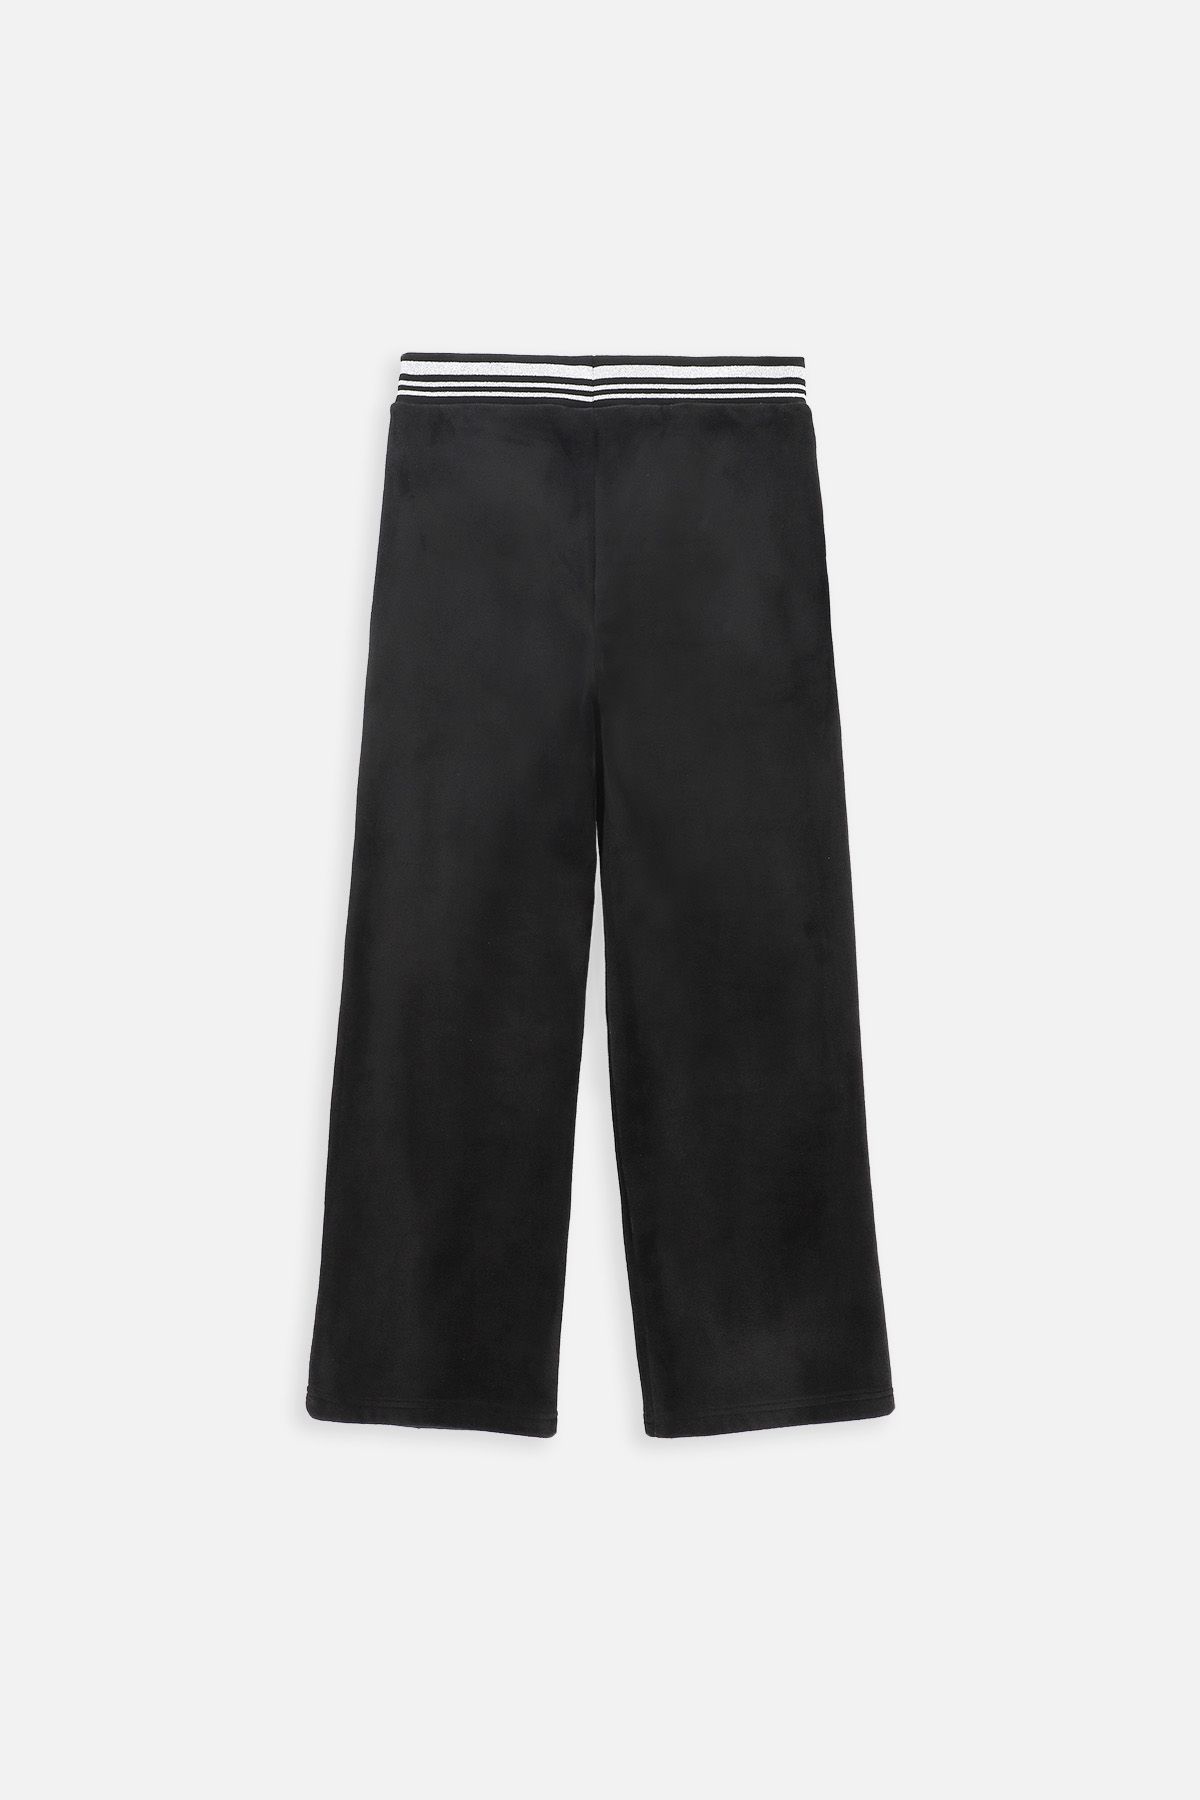 Spodnie dresowe czarne welurowe z szeroką nogawką 2220471